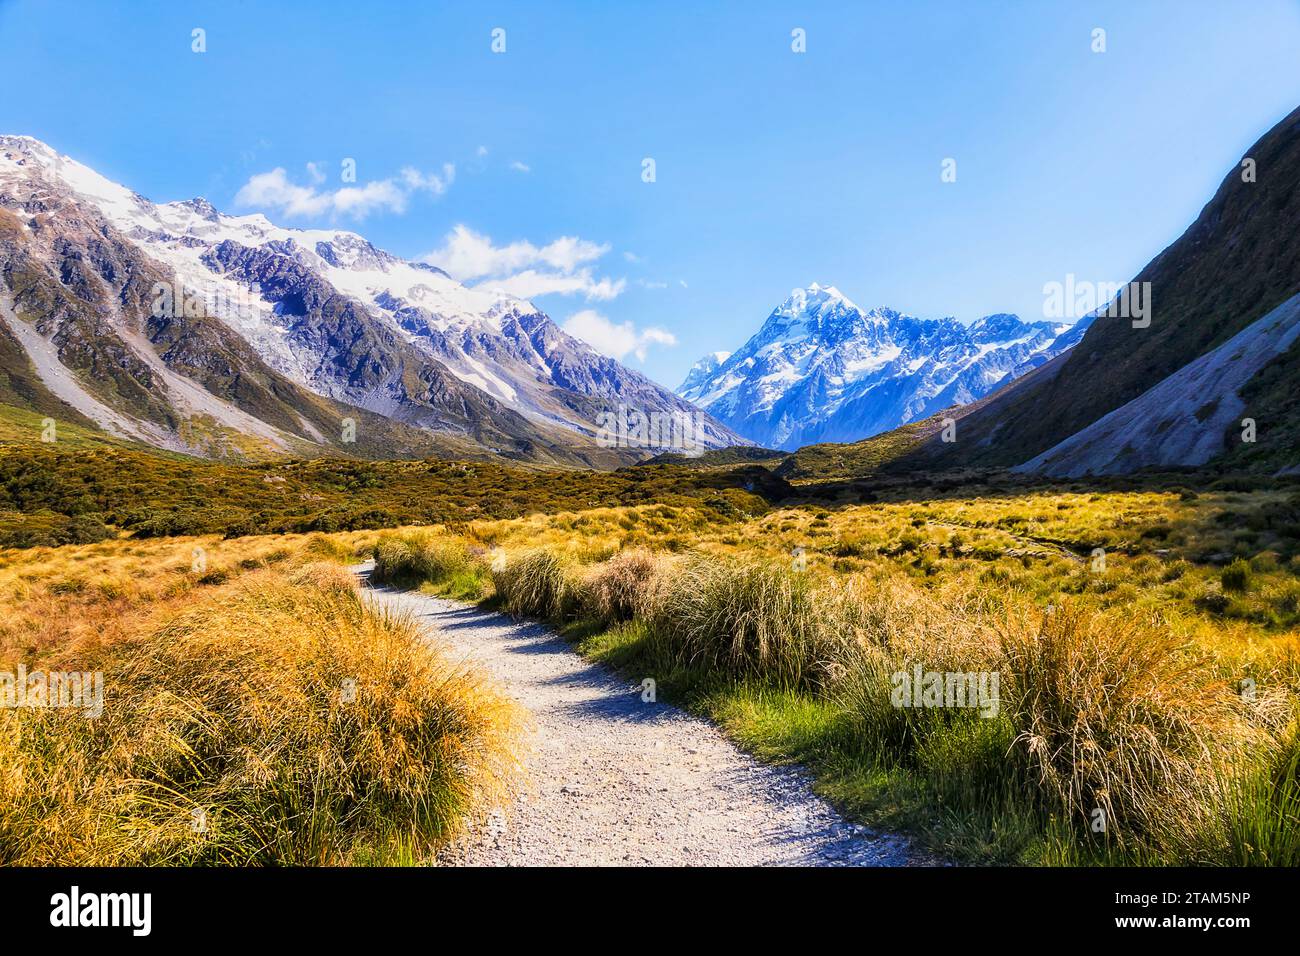 Malerischer Wanderweg im Hooker Valley in Neuseeland führt zum majestätischen Mt Cook - beliebtes Touristenziel. Stockfoto